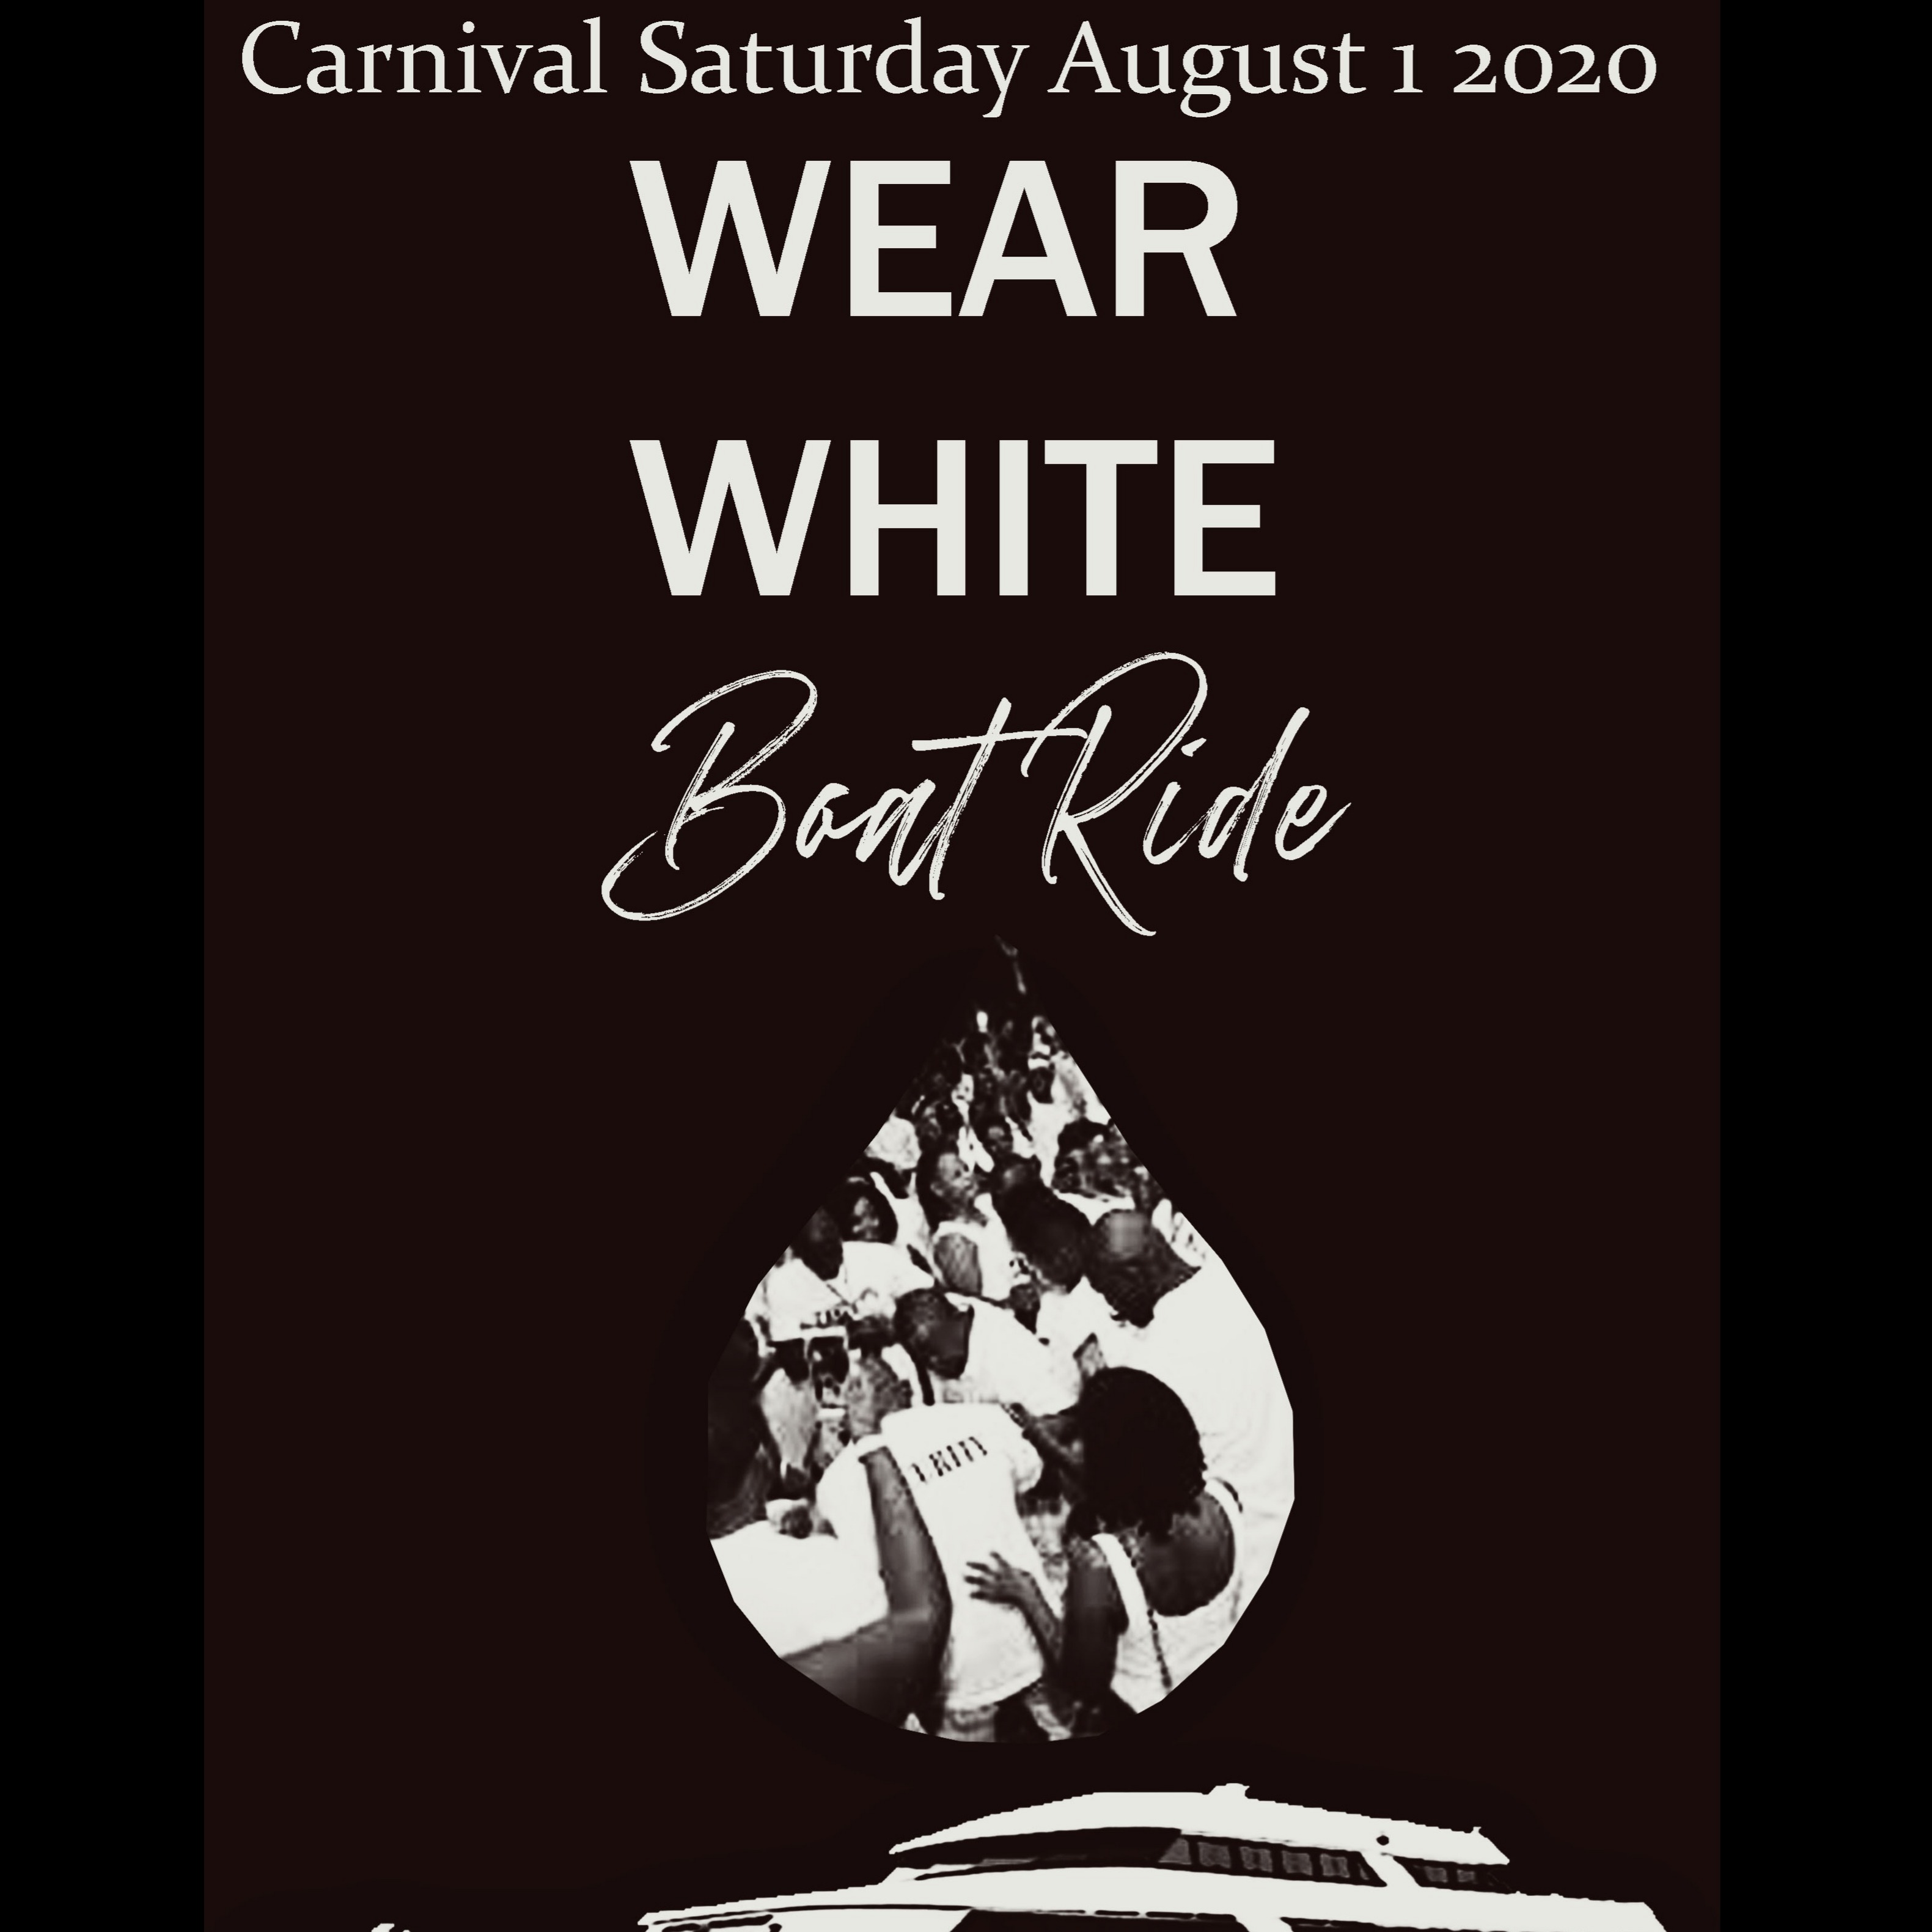 WEAR WHITE BOAT RIDE CARNIVAL 2020